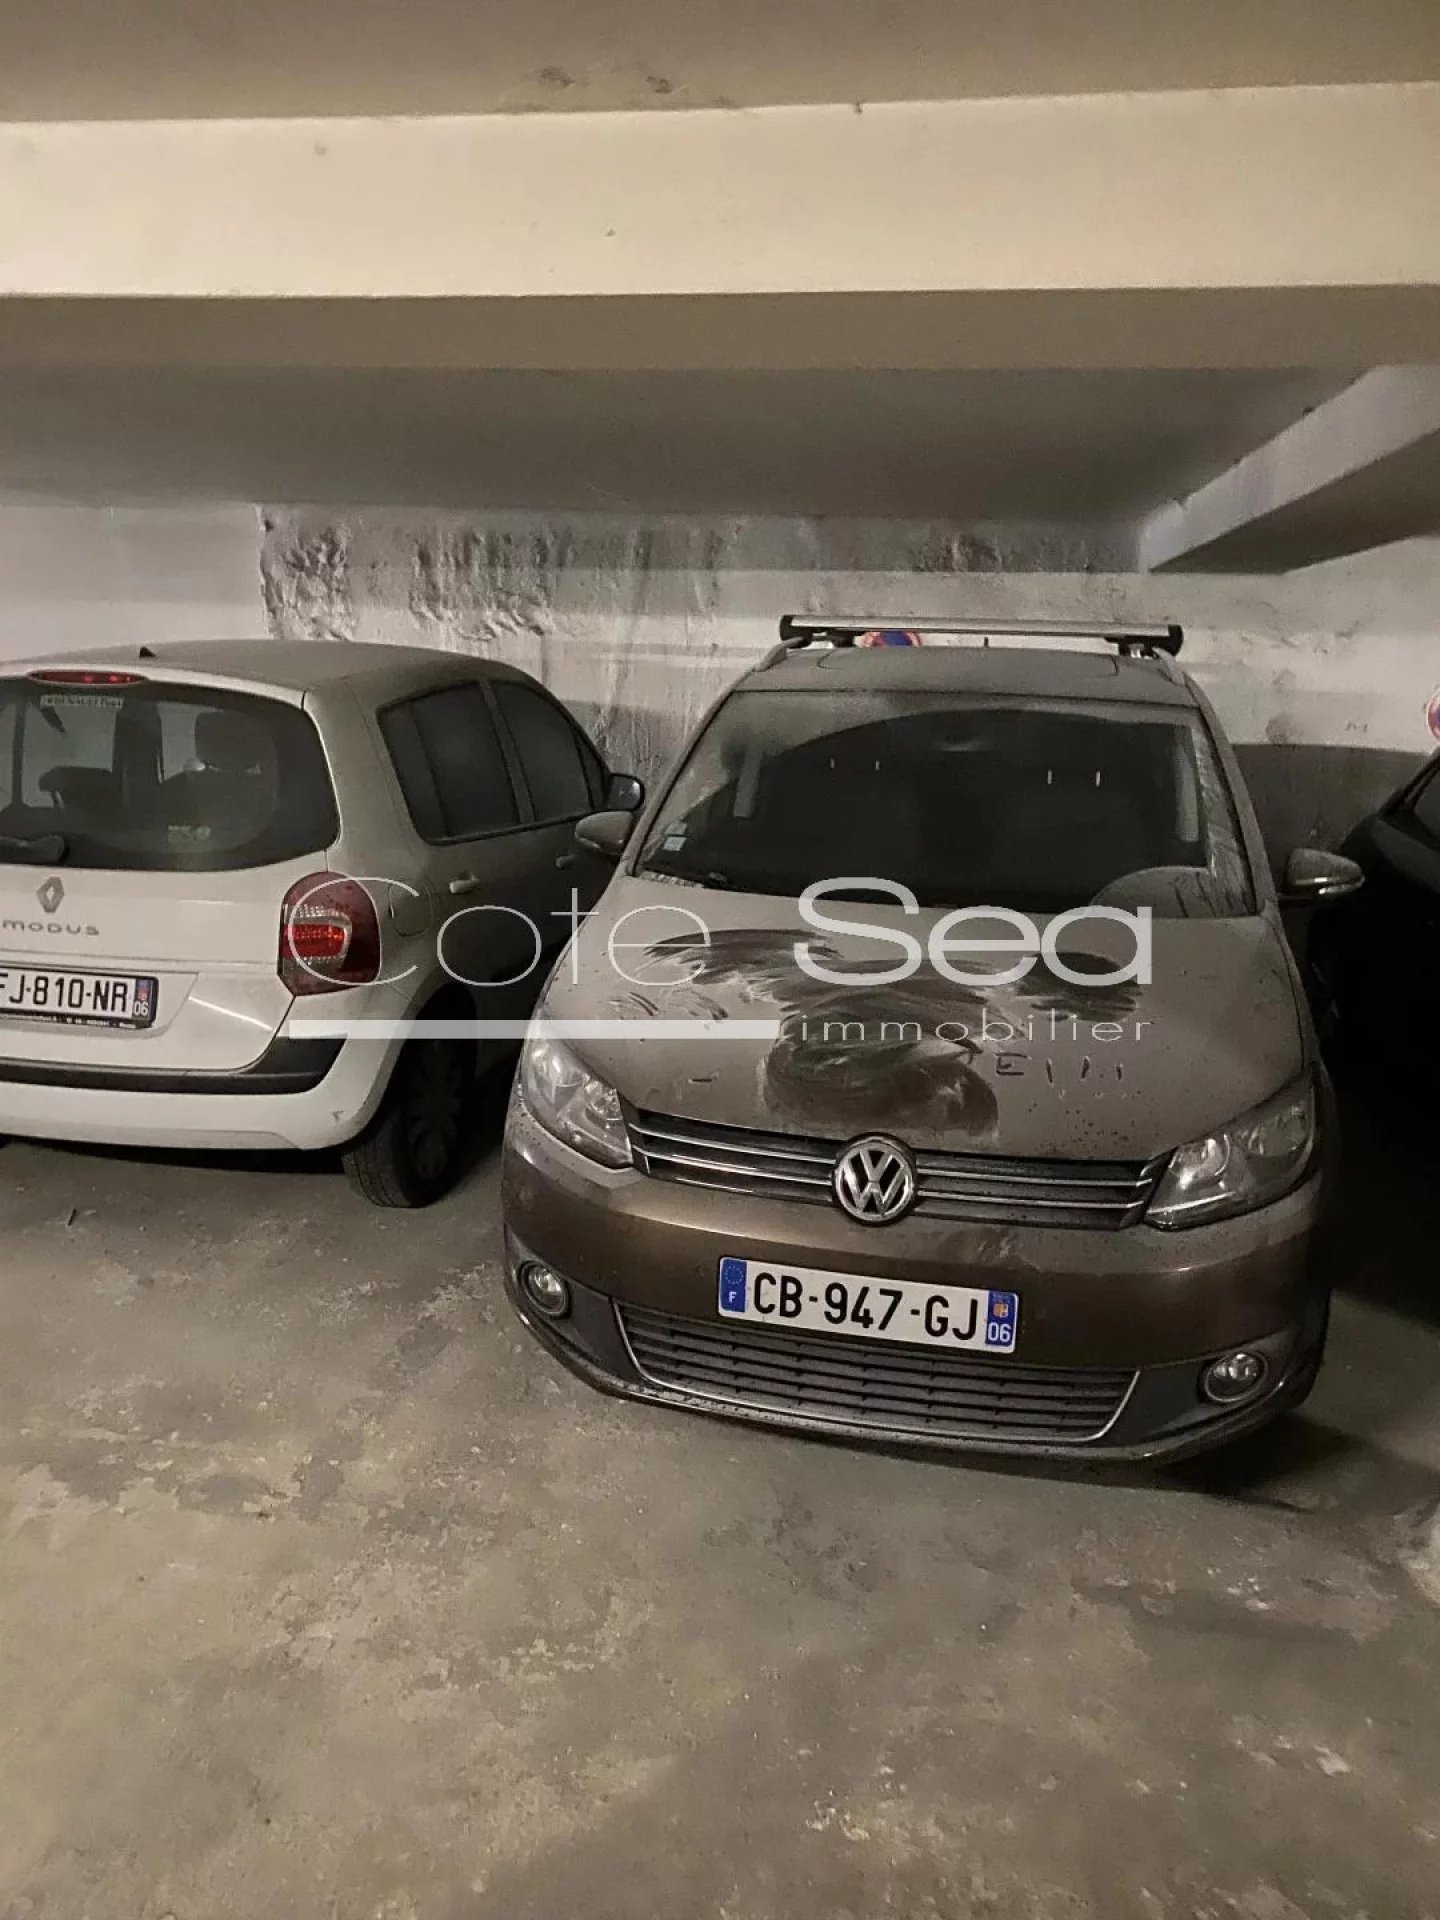 Vente Parking / Box à Nice (06100) - Cote Sea Immobilier